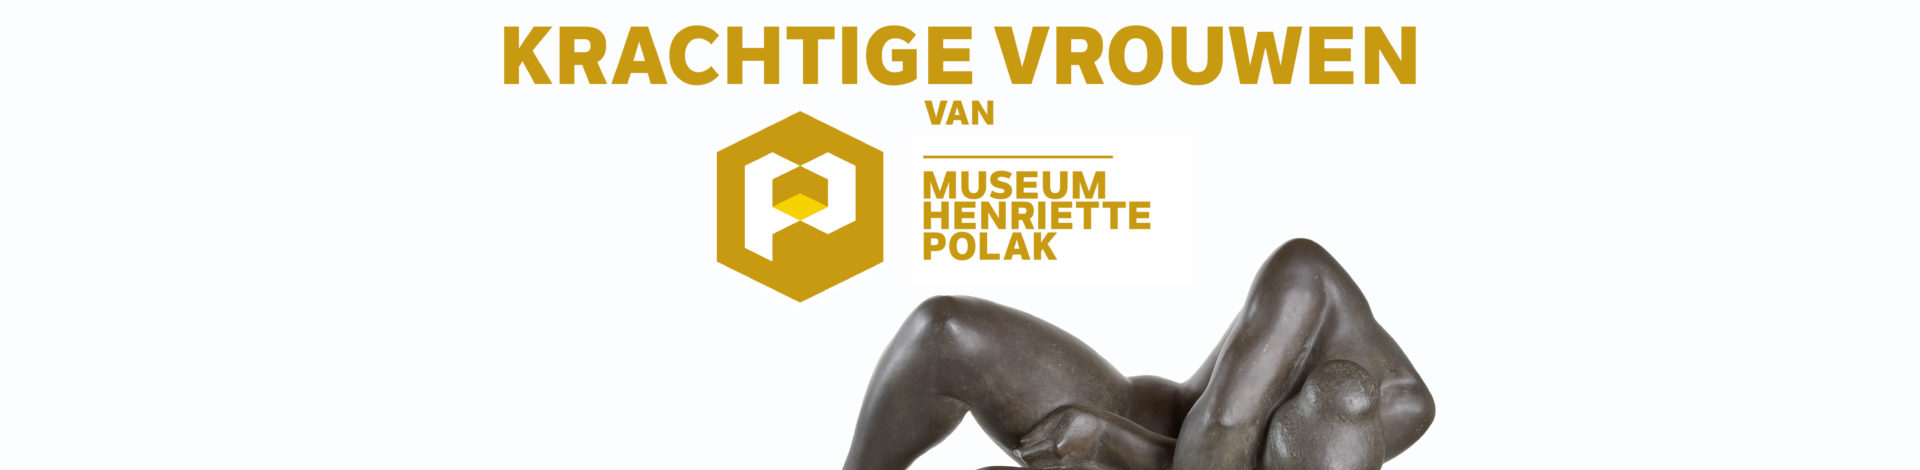 Maand van de geschiedenis in de Musea Zutphen: Krachtige vrouwen